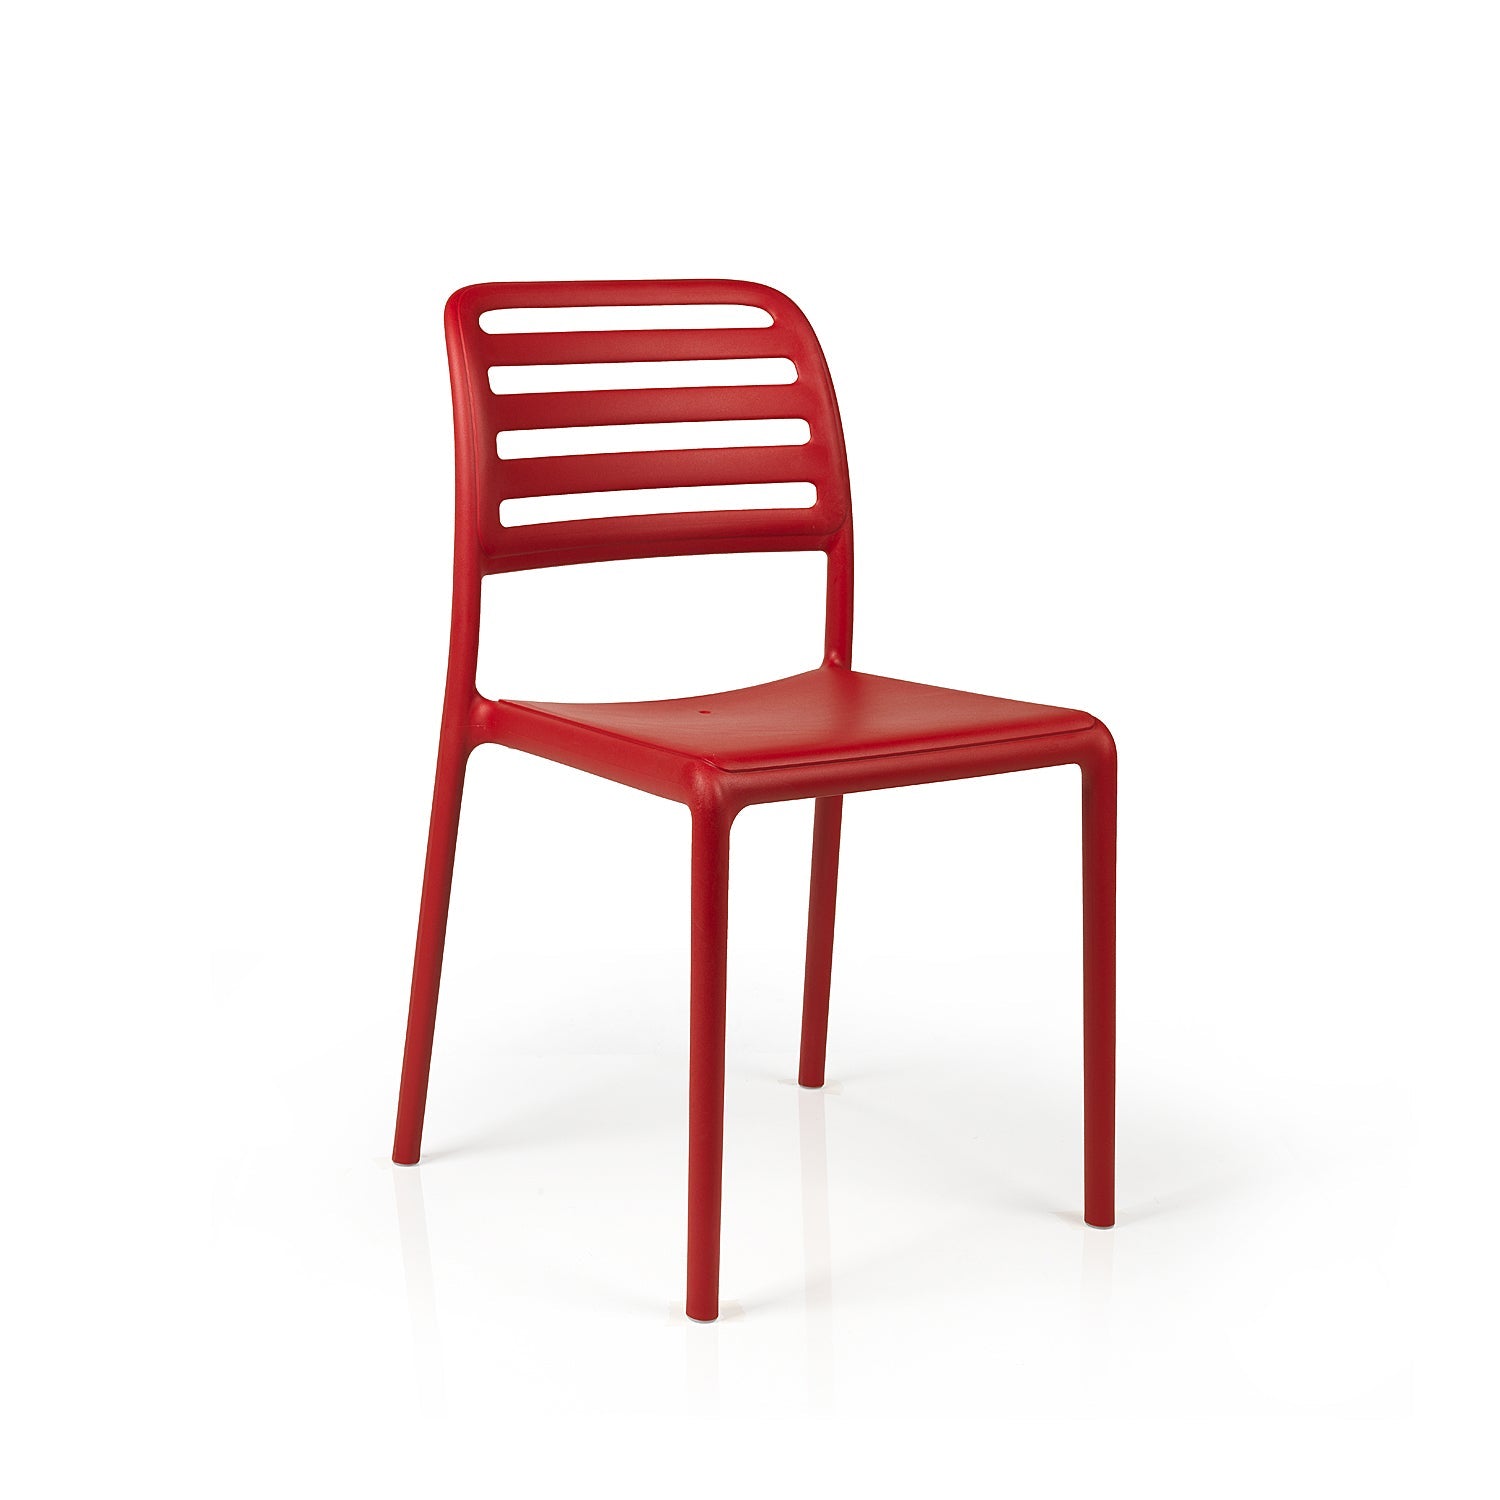 Costa Bistro Garden Chair By Nardi -  Red